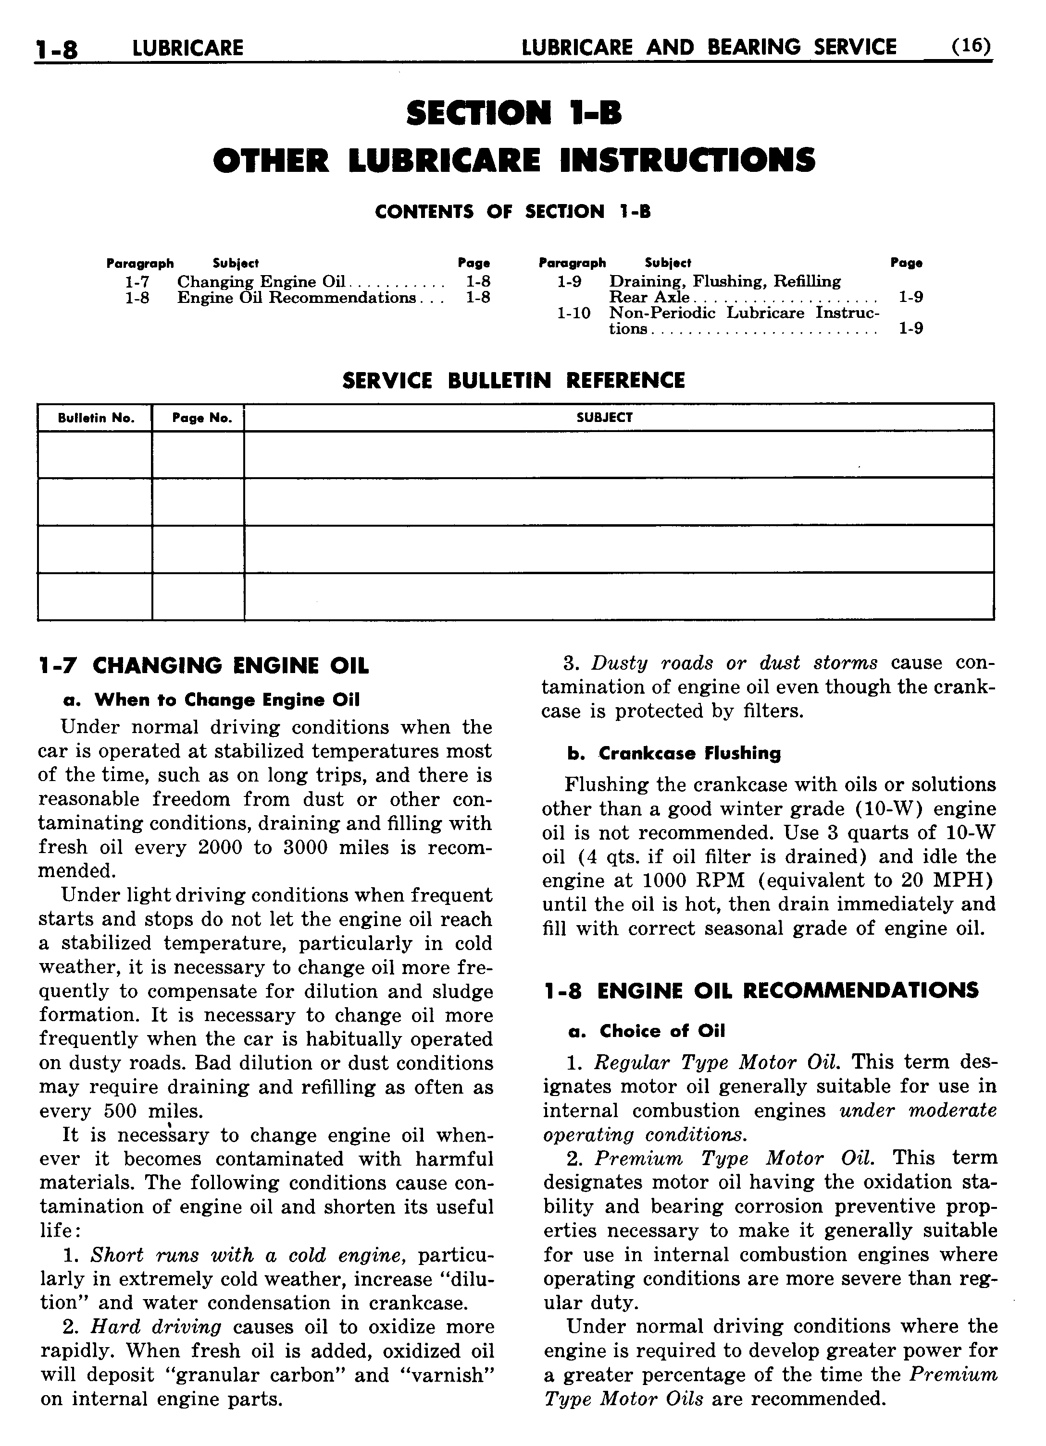 n_02 1948 Buick Shop Manual - Lubricare-008-008.jpg